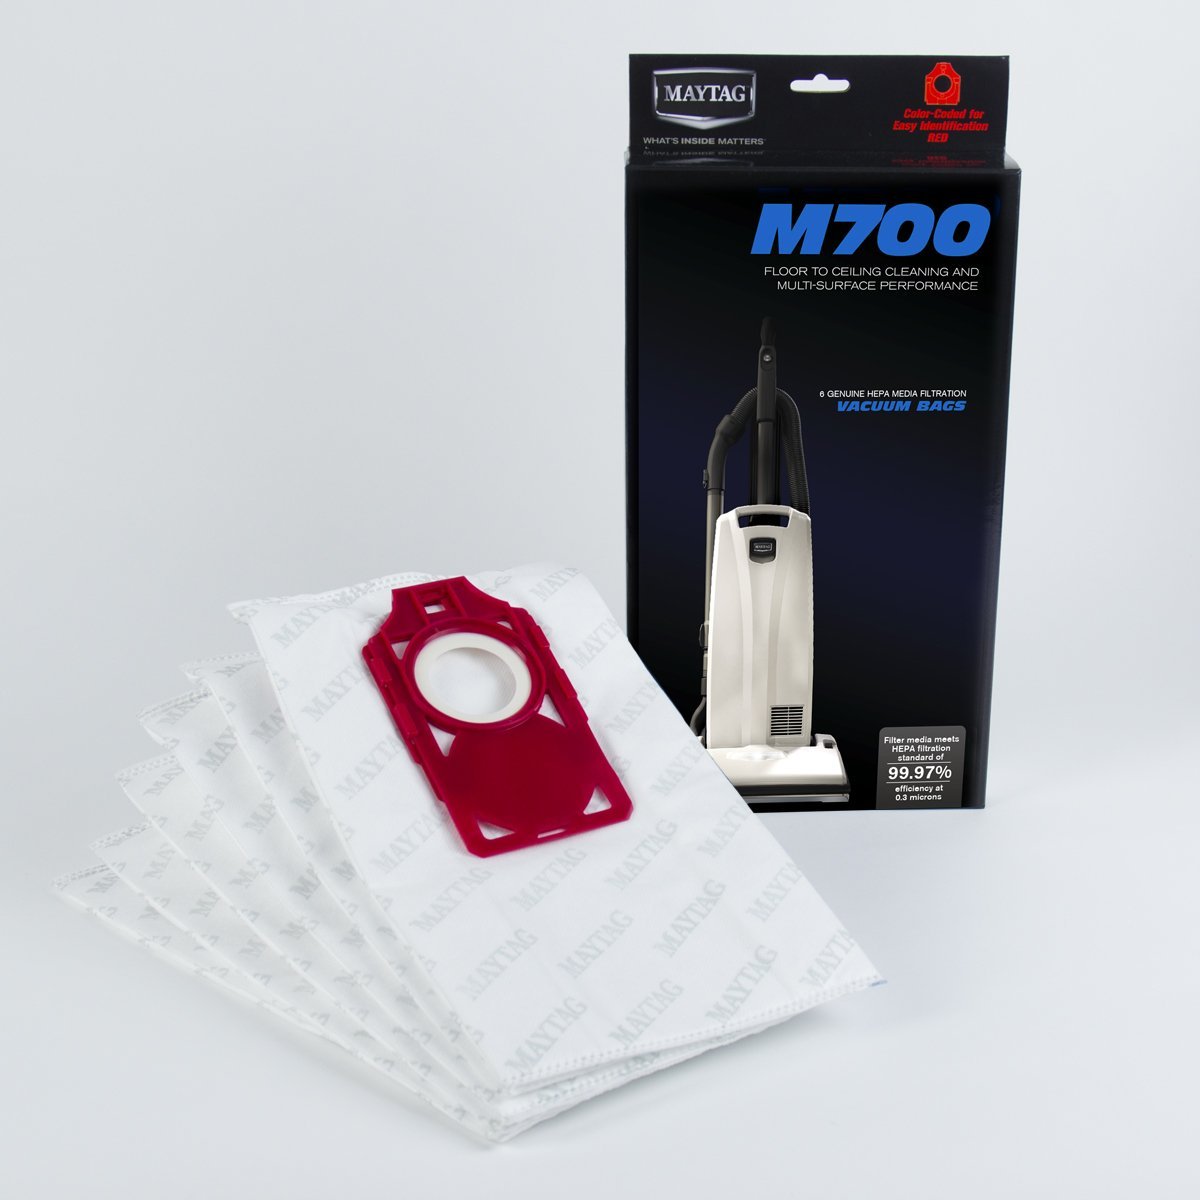 MAYTAG -  M700 HEPA Media Bags